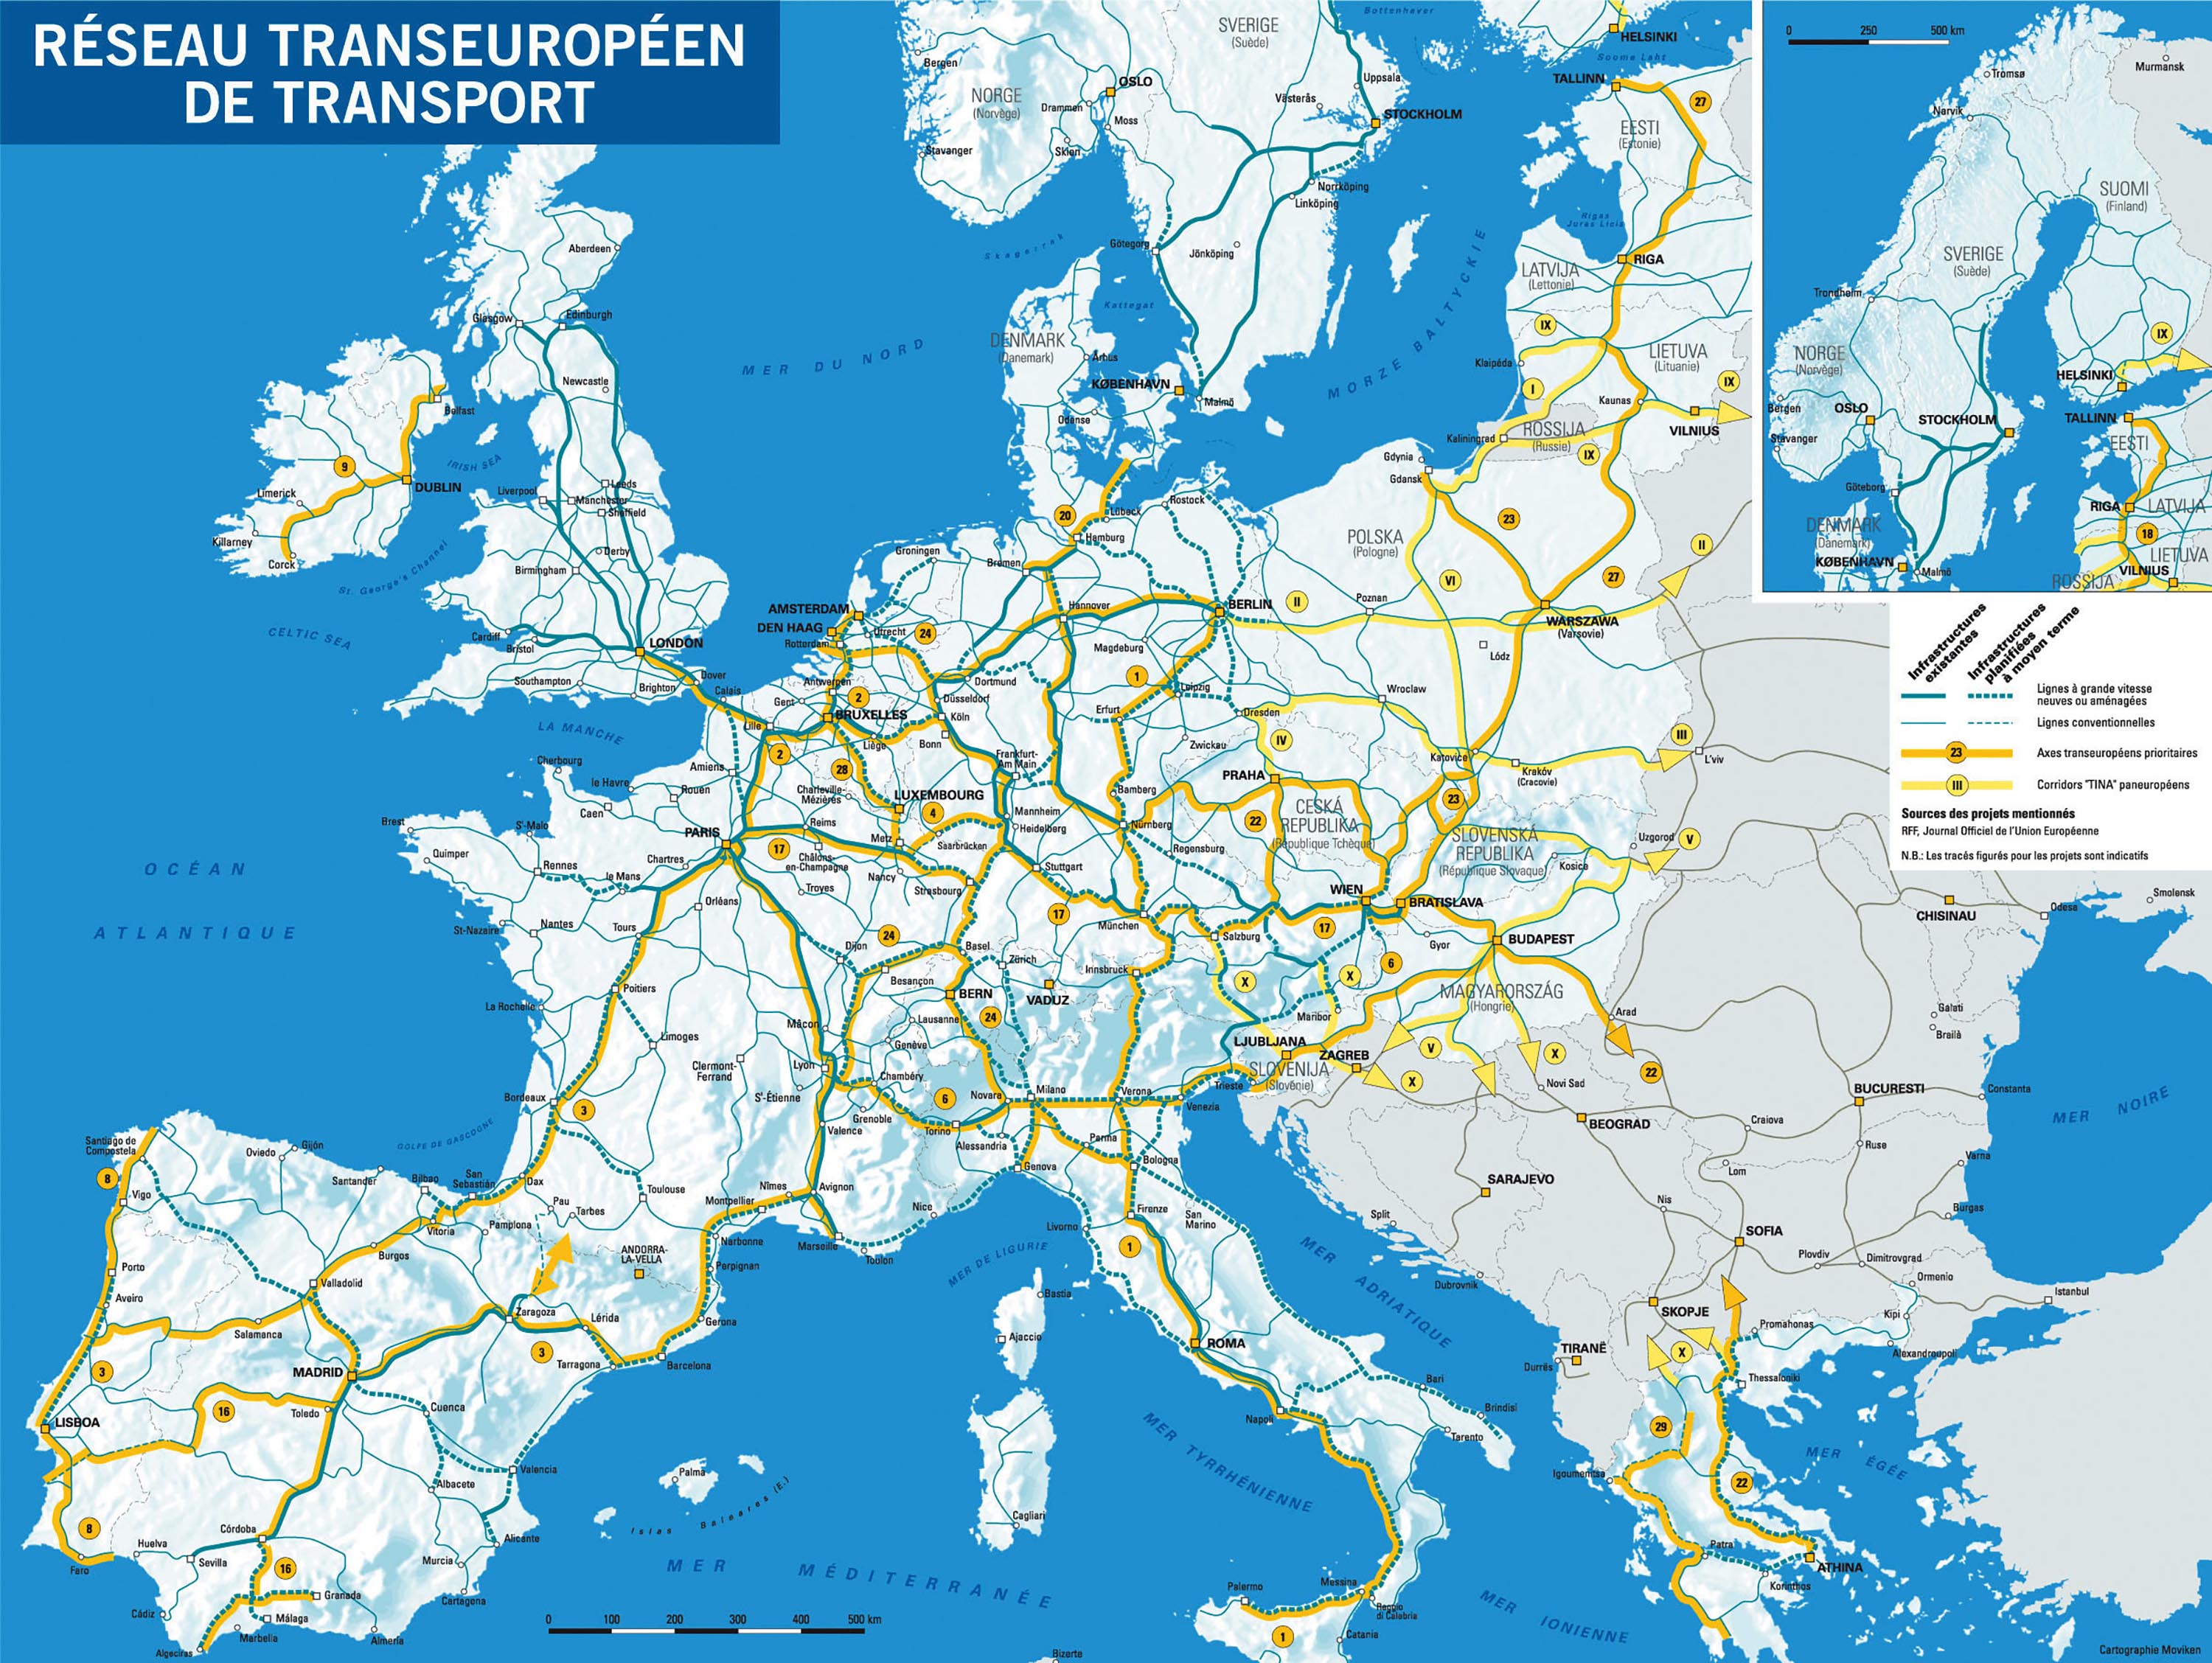 Les corridors de transport transeuropéen dans le Sud-Ouest européen (haute définition)